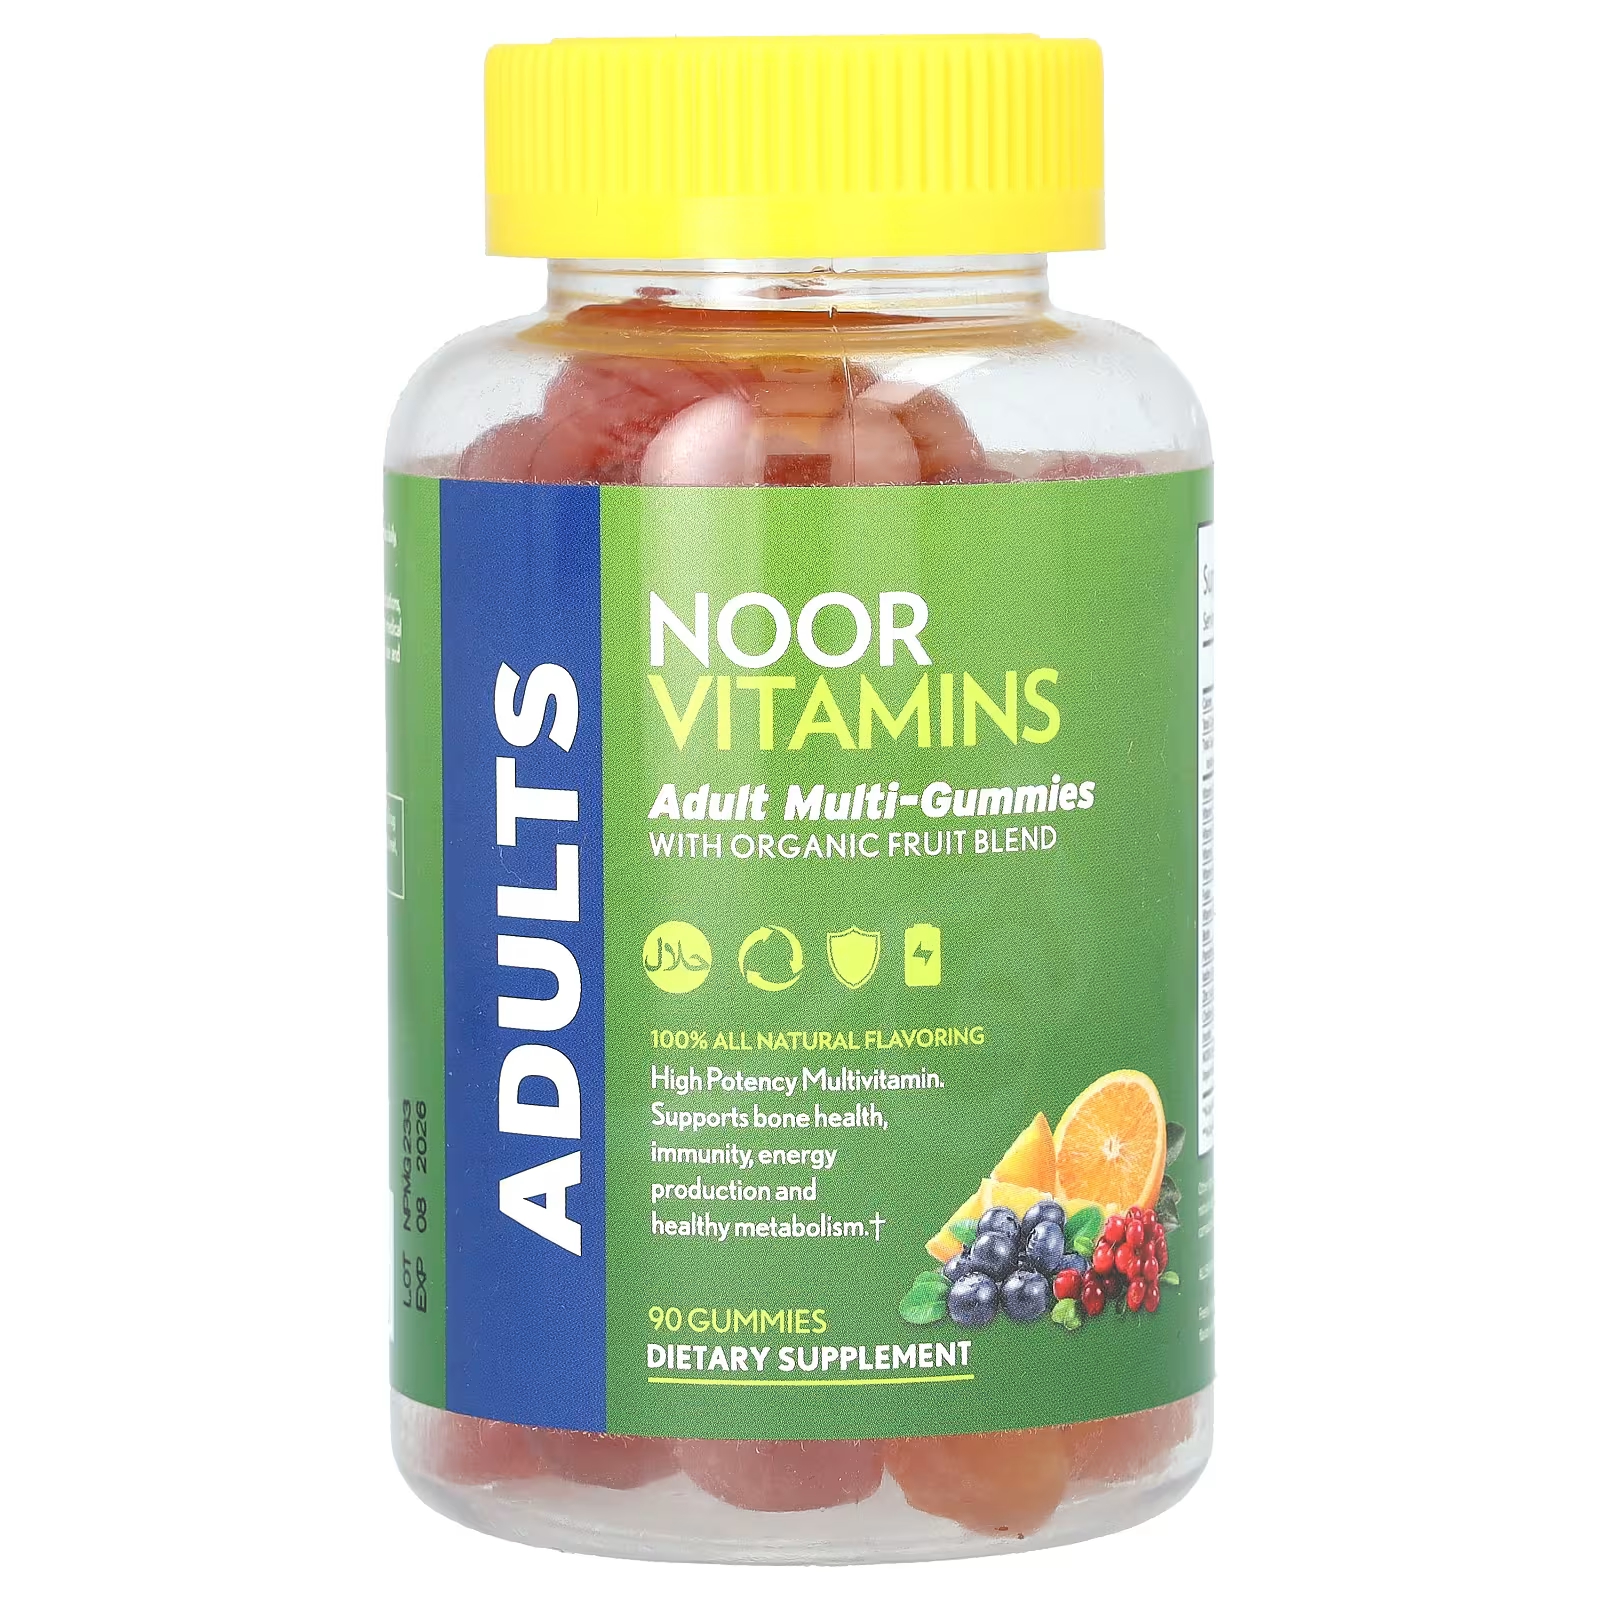 Мультивитаминны Noor Vitamins со смесью фруктов, 90 жевательных таблеток noor витамины мультивитамины и минералы 60 таблеток noor vitamins